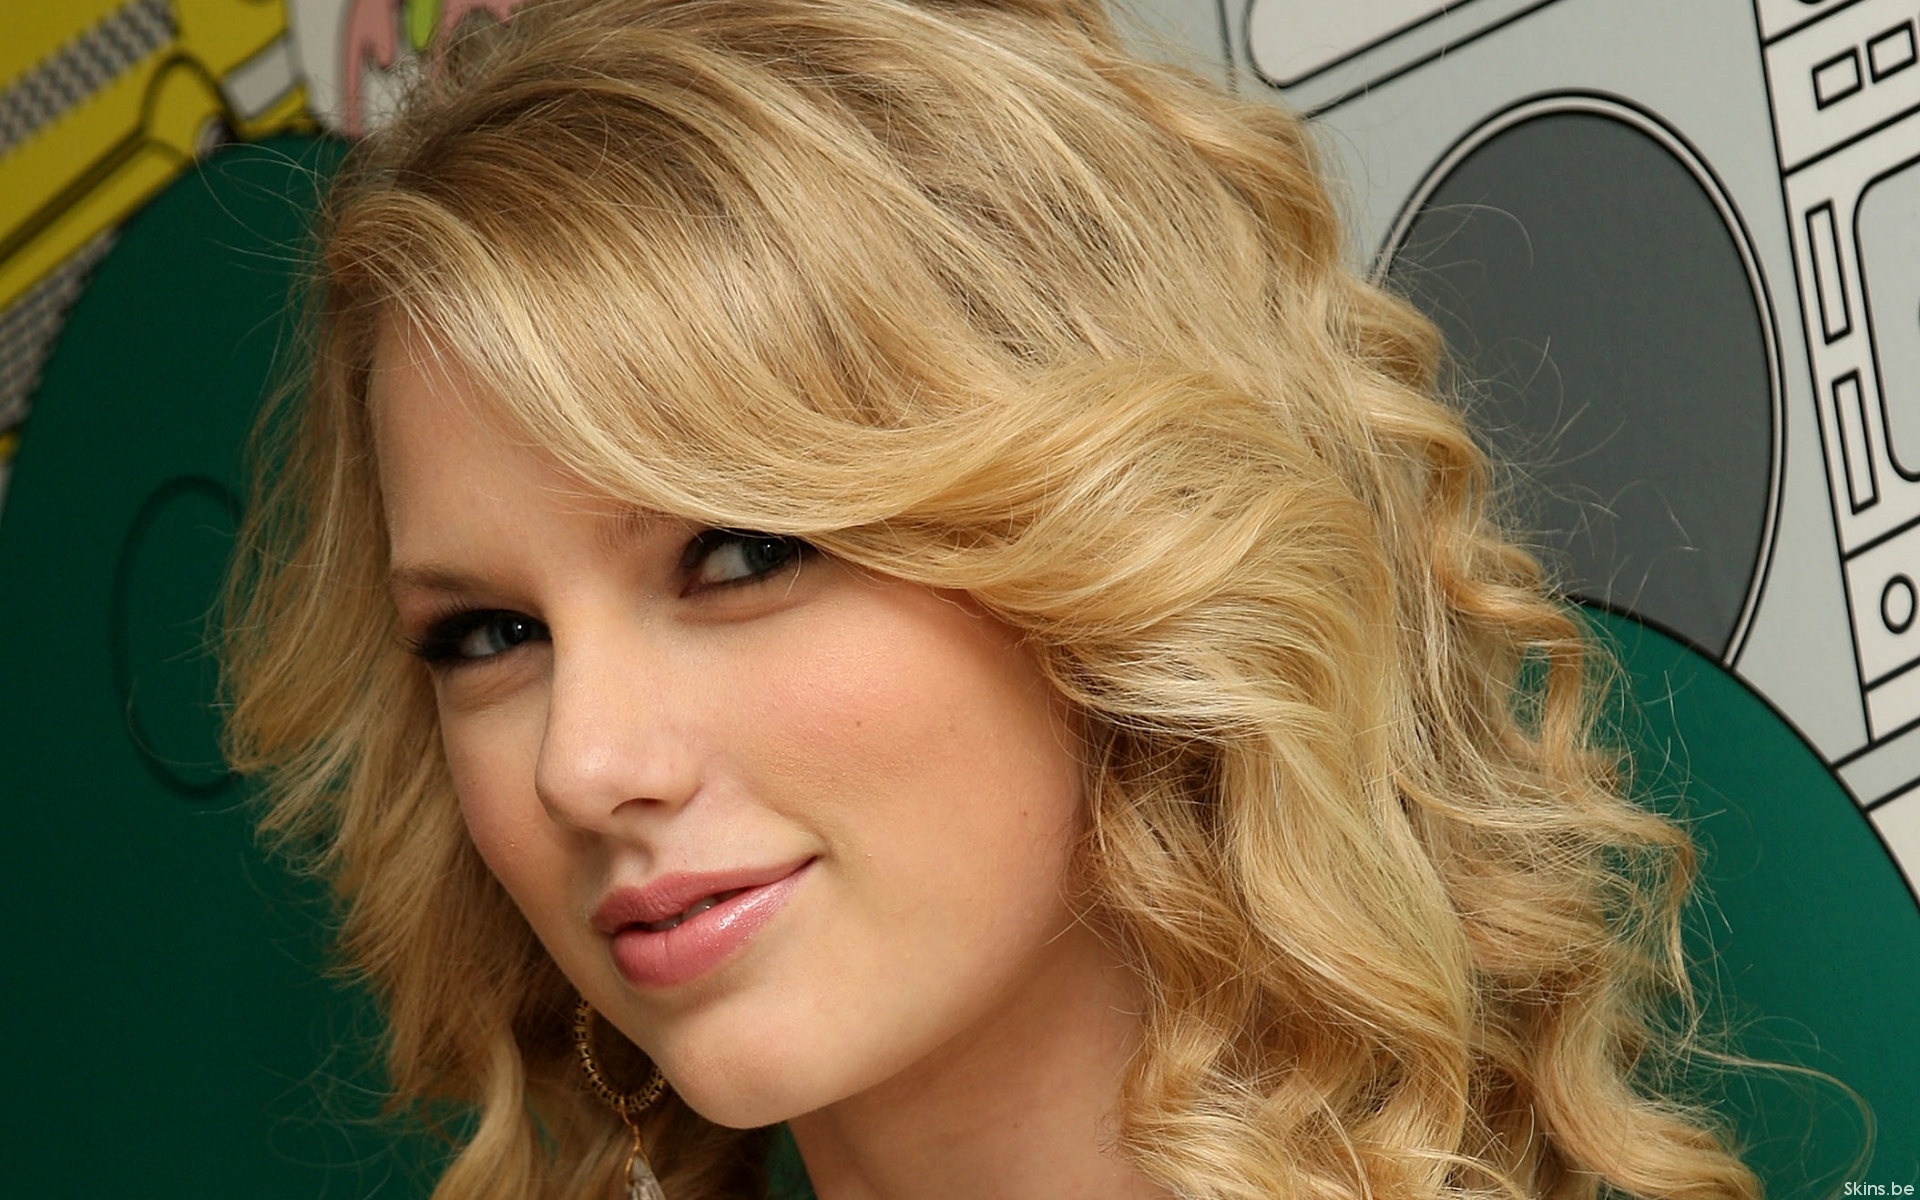 blondes, women, Taylor Swift, celebrity, singers - desktop wallpaper